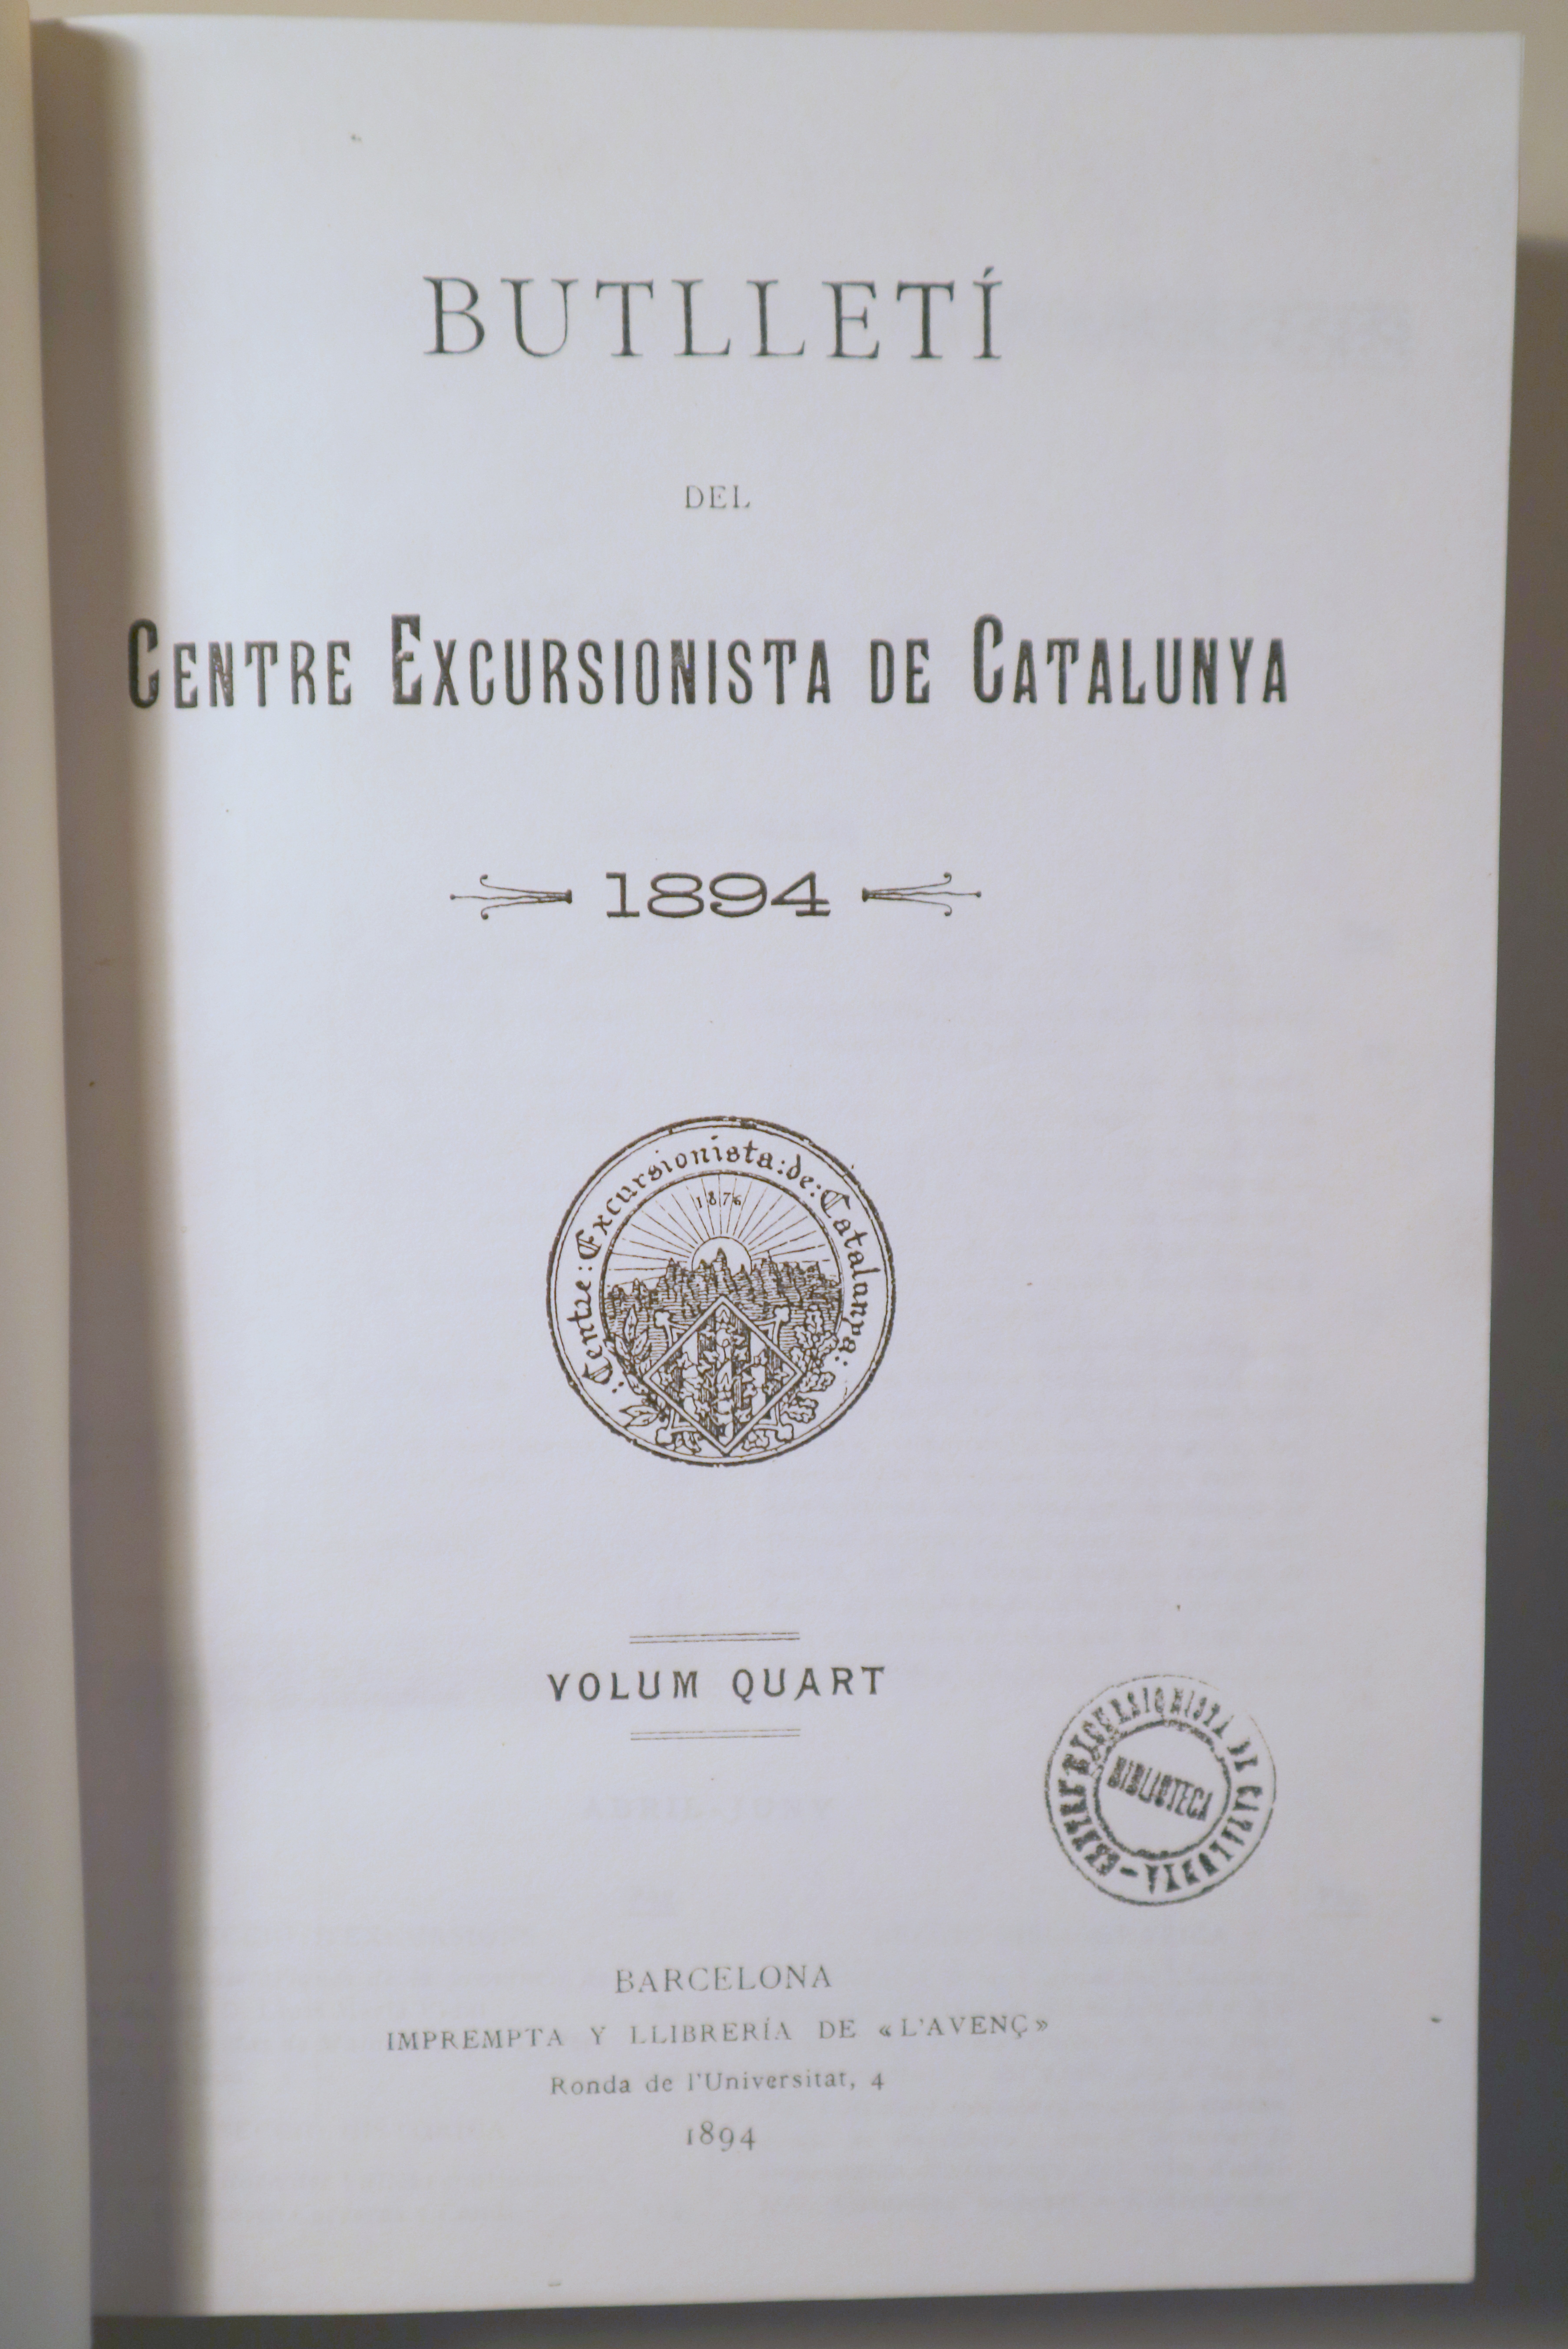 BUTLLETÍ DEL CENTRE EXCURSIONISTA DE CATALUNYA 1894. Volum 4t (en fotocòpia) - Barcelona 1894 - Il·lustrat